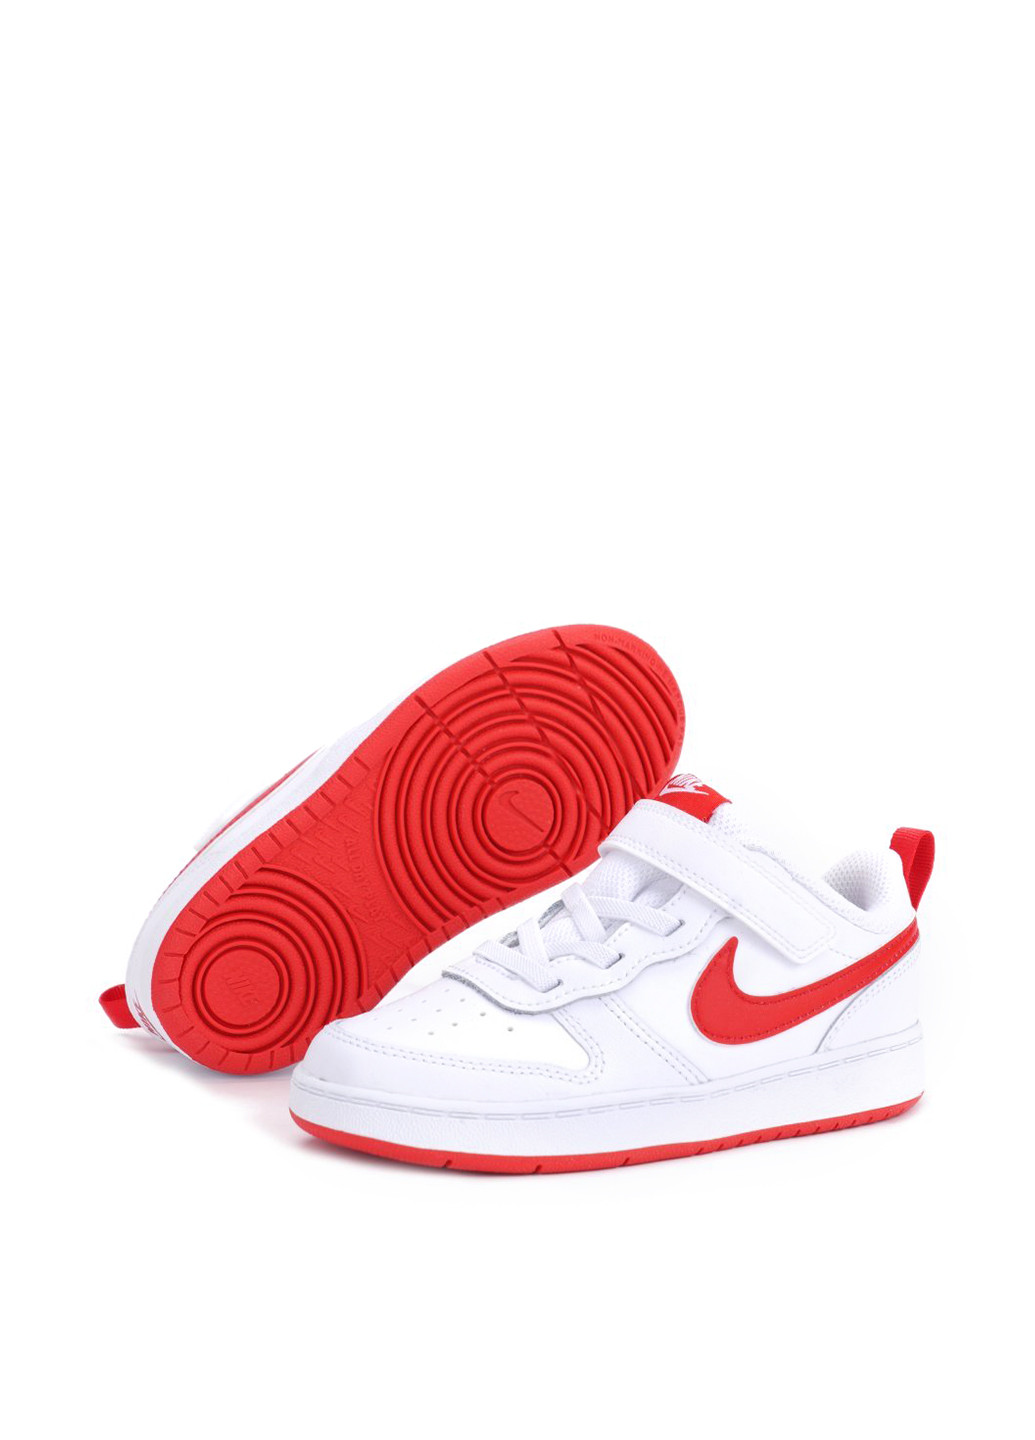 Белые всесезонные кроссовки Nike Court Borough Low 2